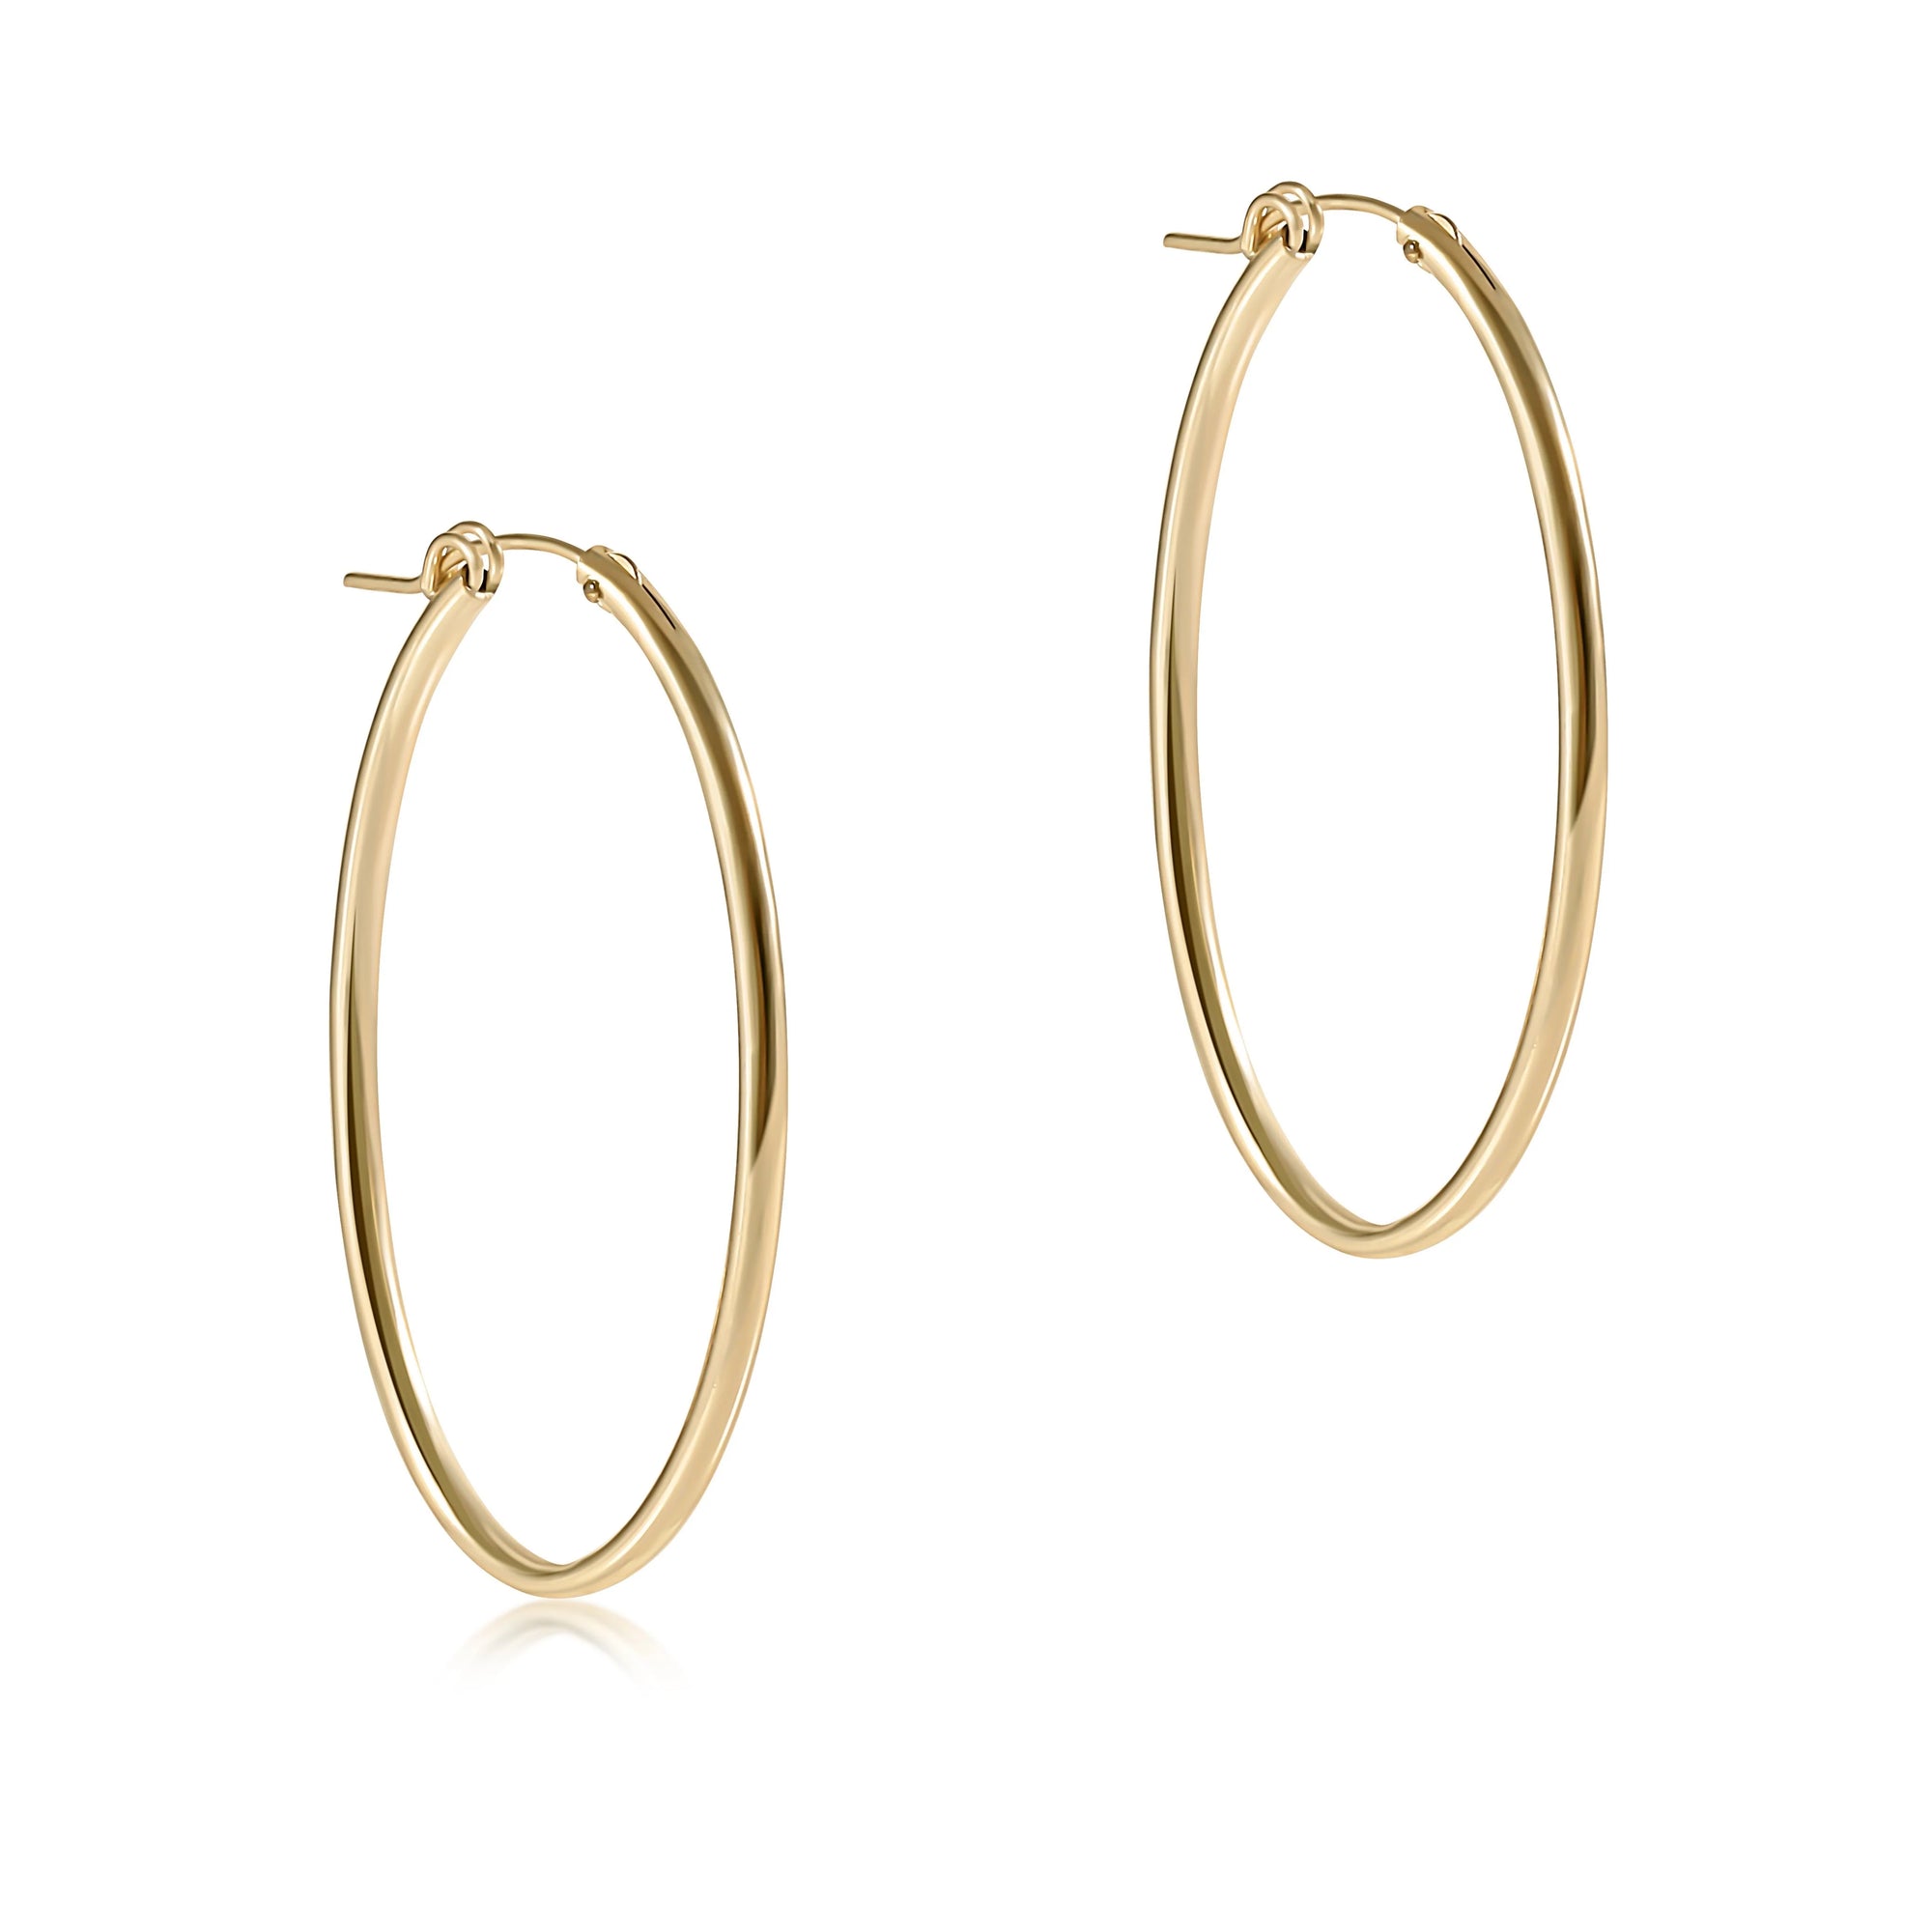 Oval gold 2" hoop earrings - smooth